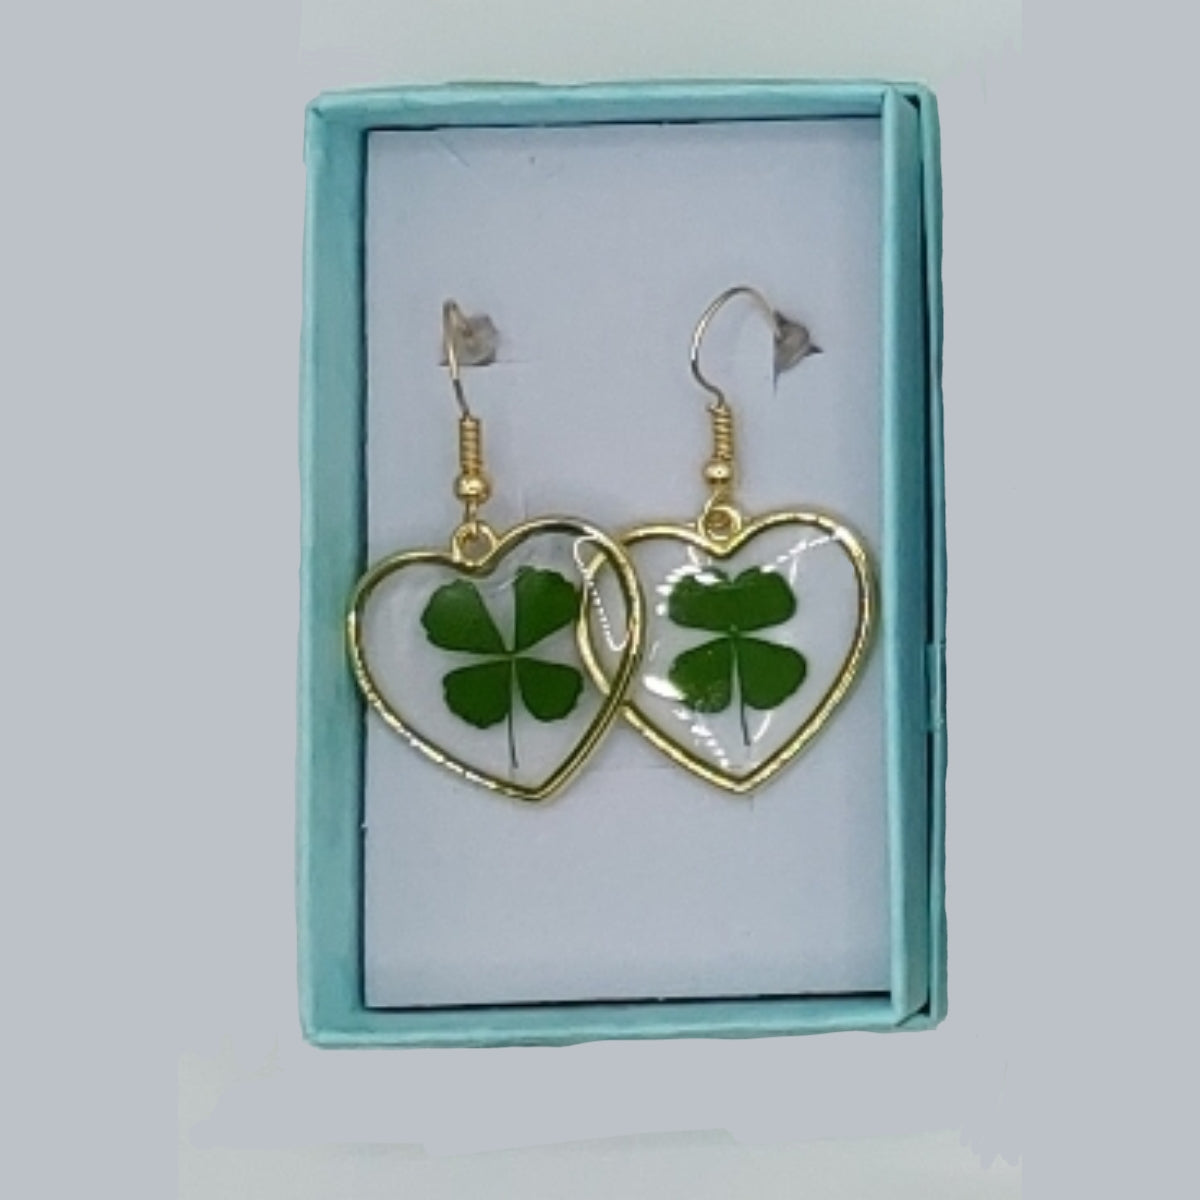 St Patrick's Day Earrings Wooden Heart Shamrock